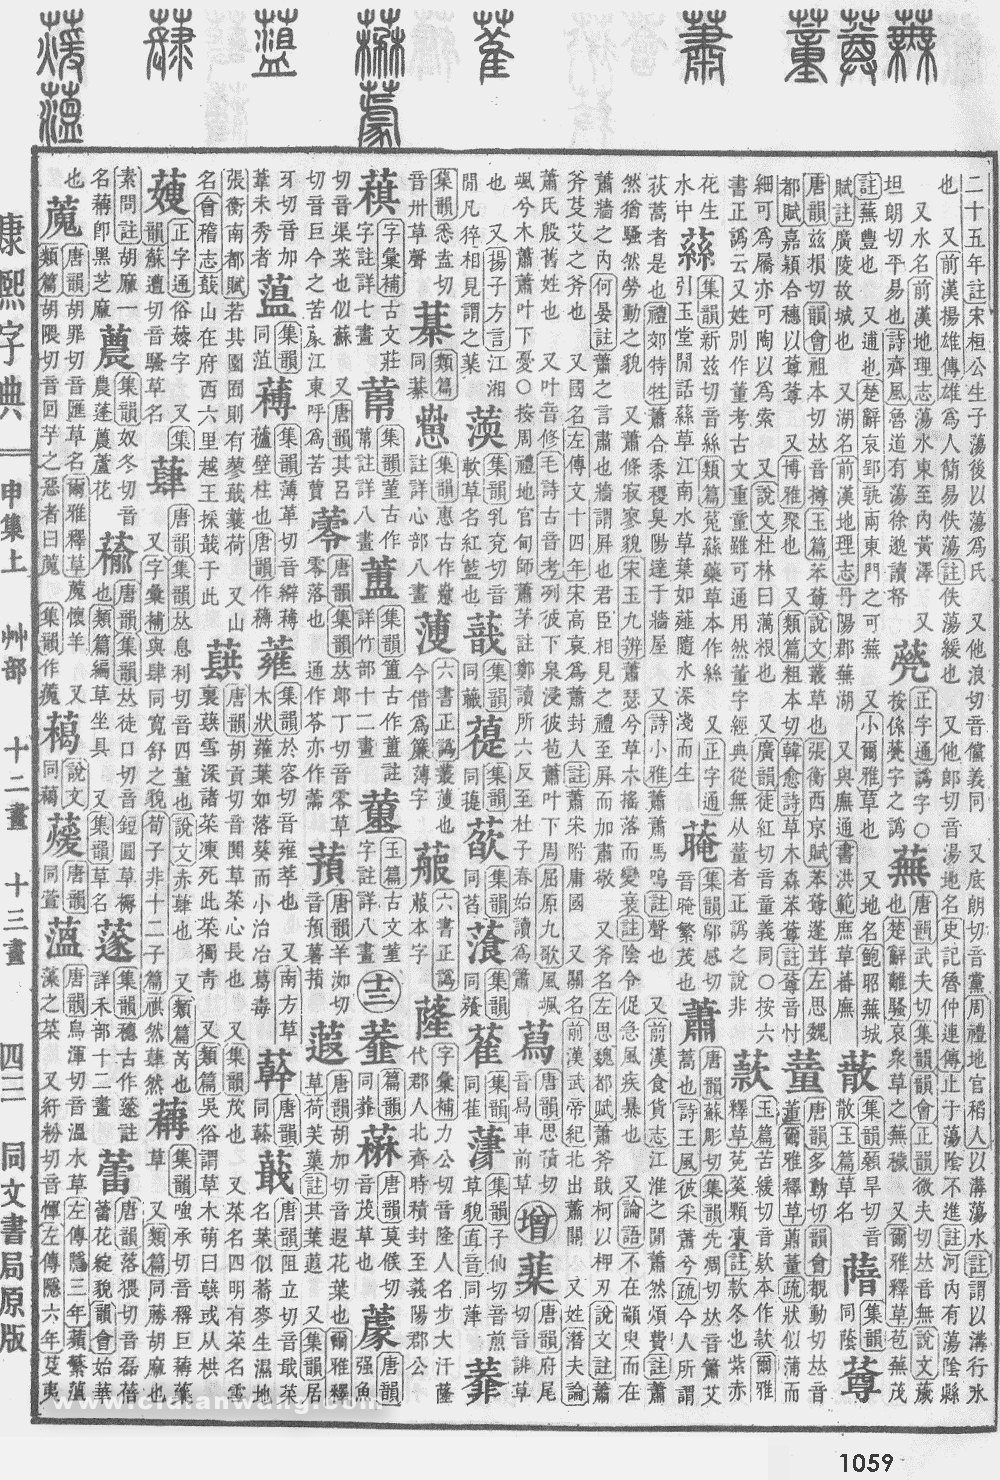 康熙字典掃描版第1059頁